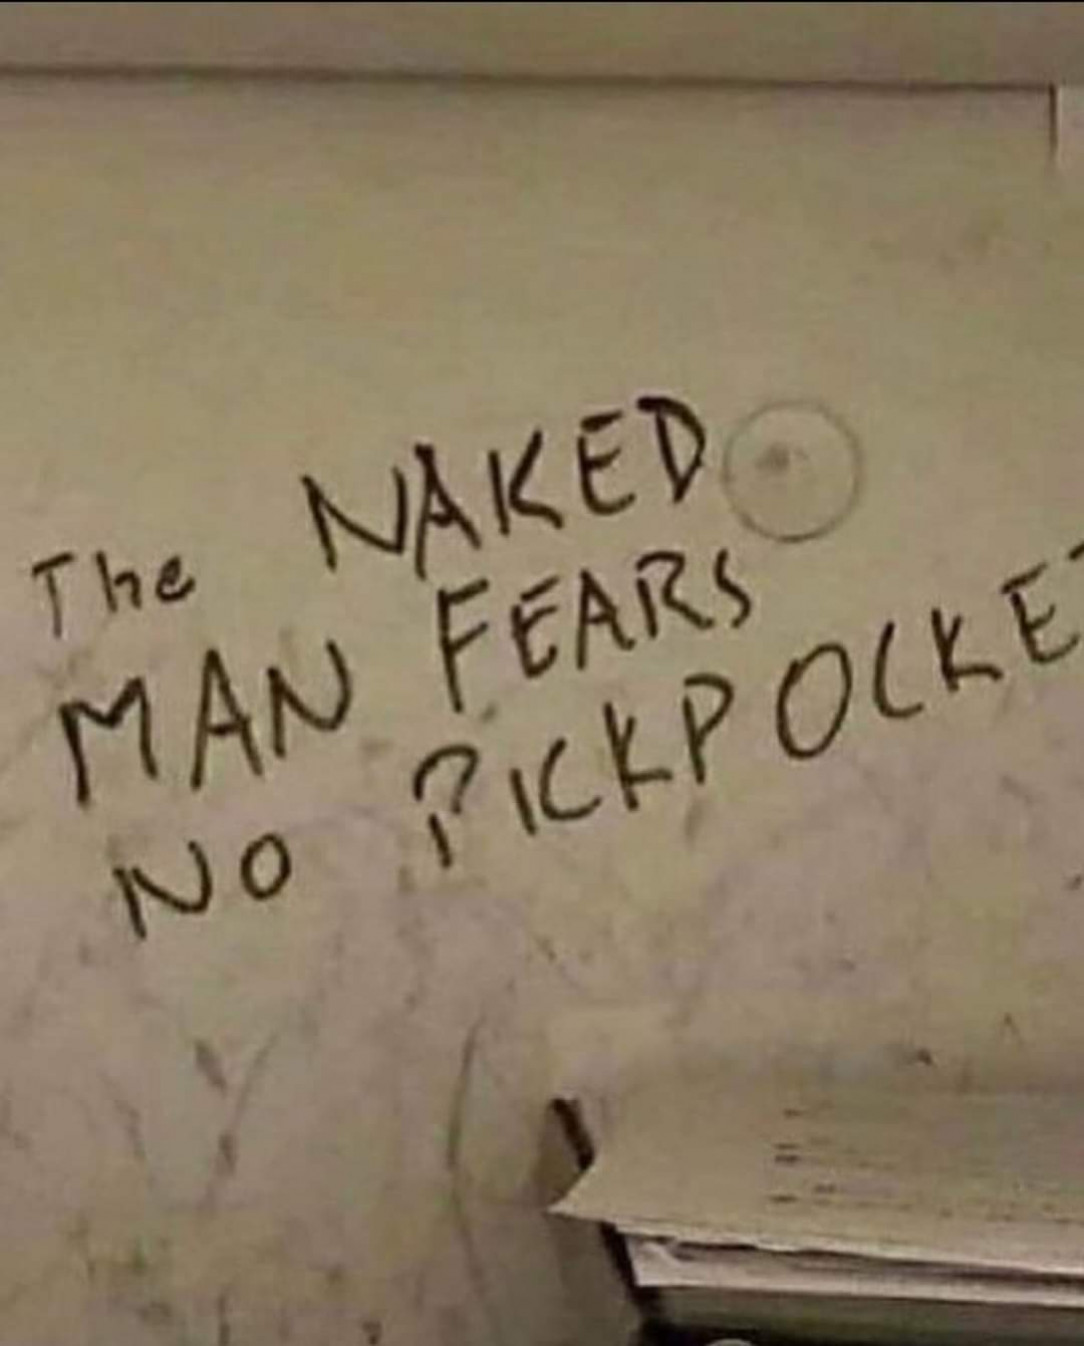 Fearless Nakedman, no pickhole is safe